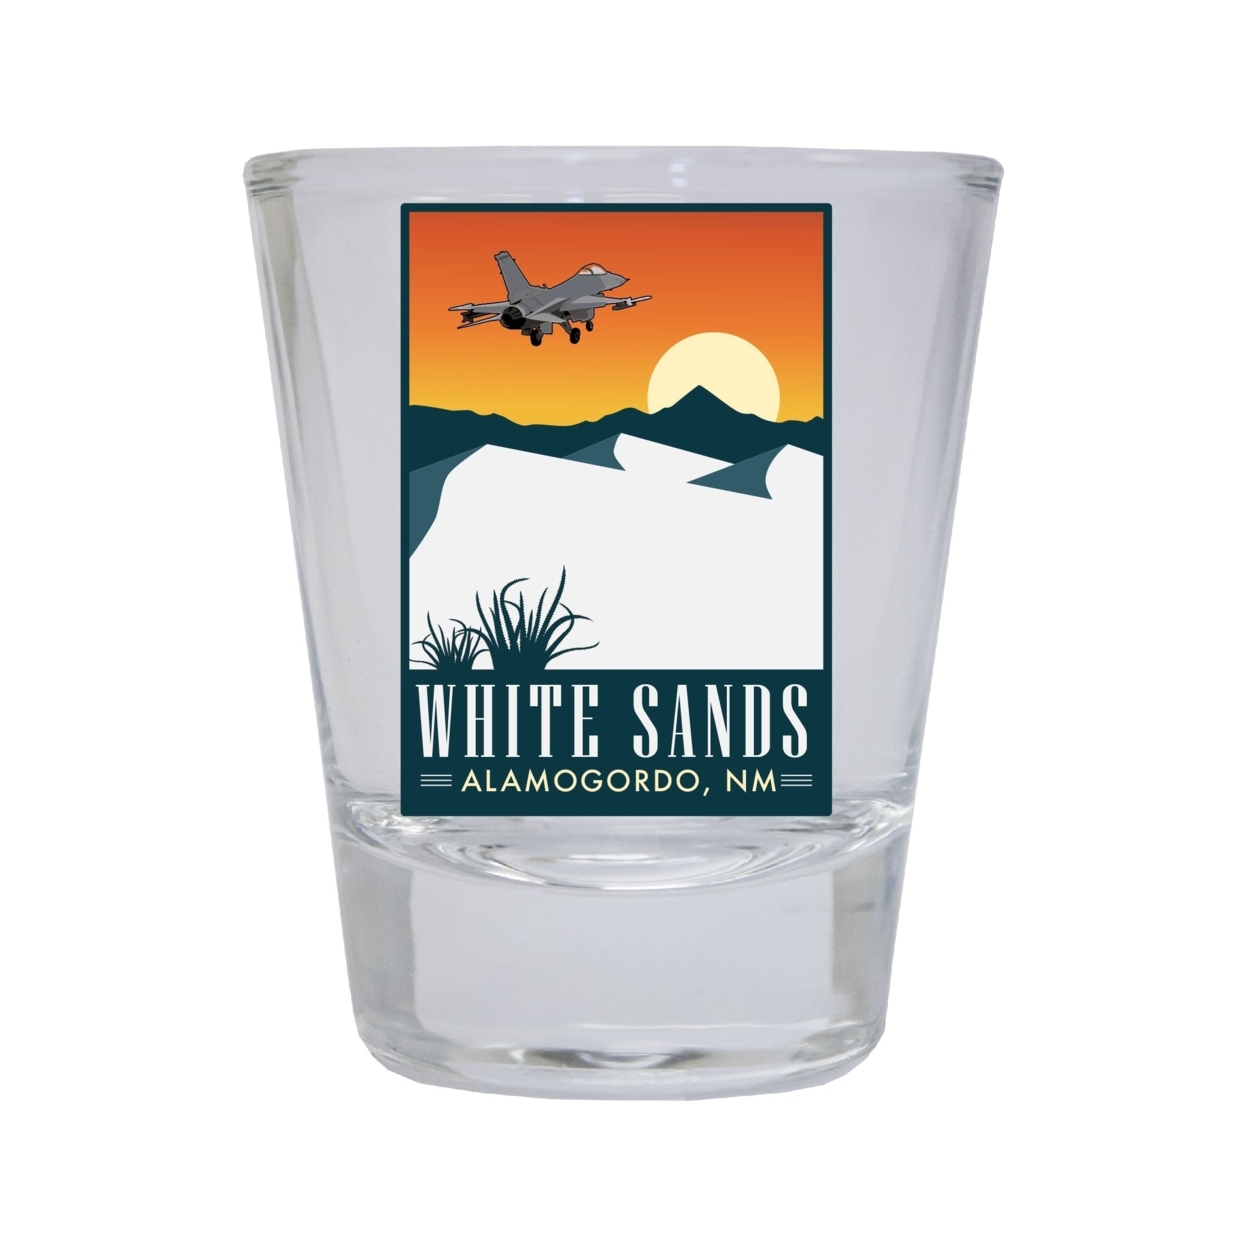 White Sands Alamogordo New Mexico Souvenir Round Shot Glass Choice Of Design - Design 3